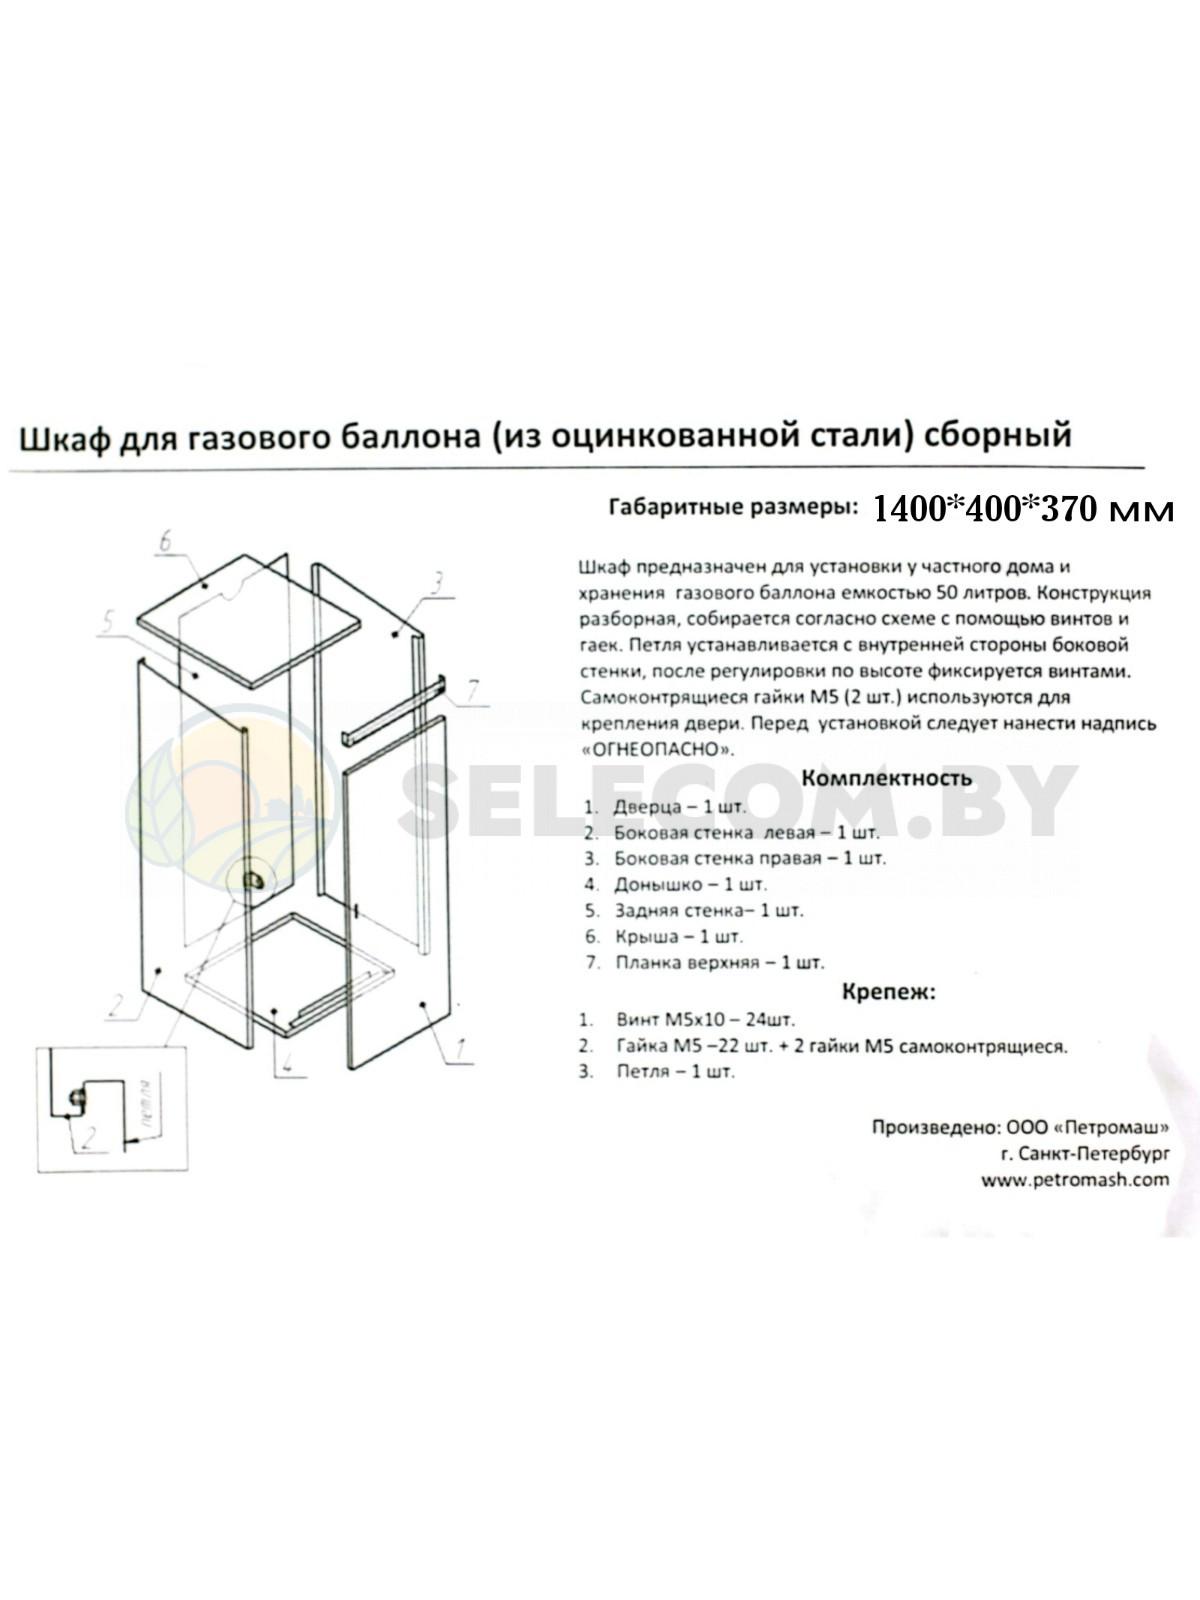 Шкаф для газовых баллонов (серый, 1*50 л.) высота 1,4 м. 16